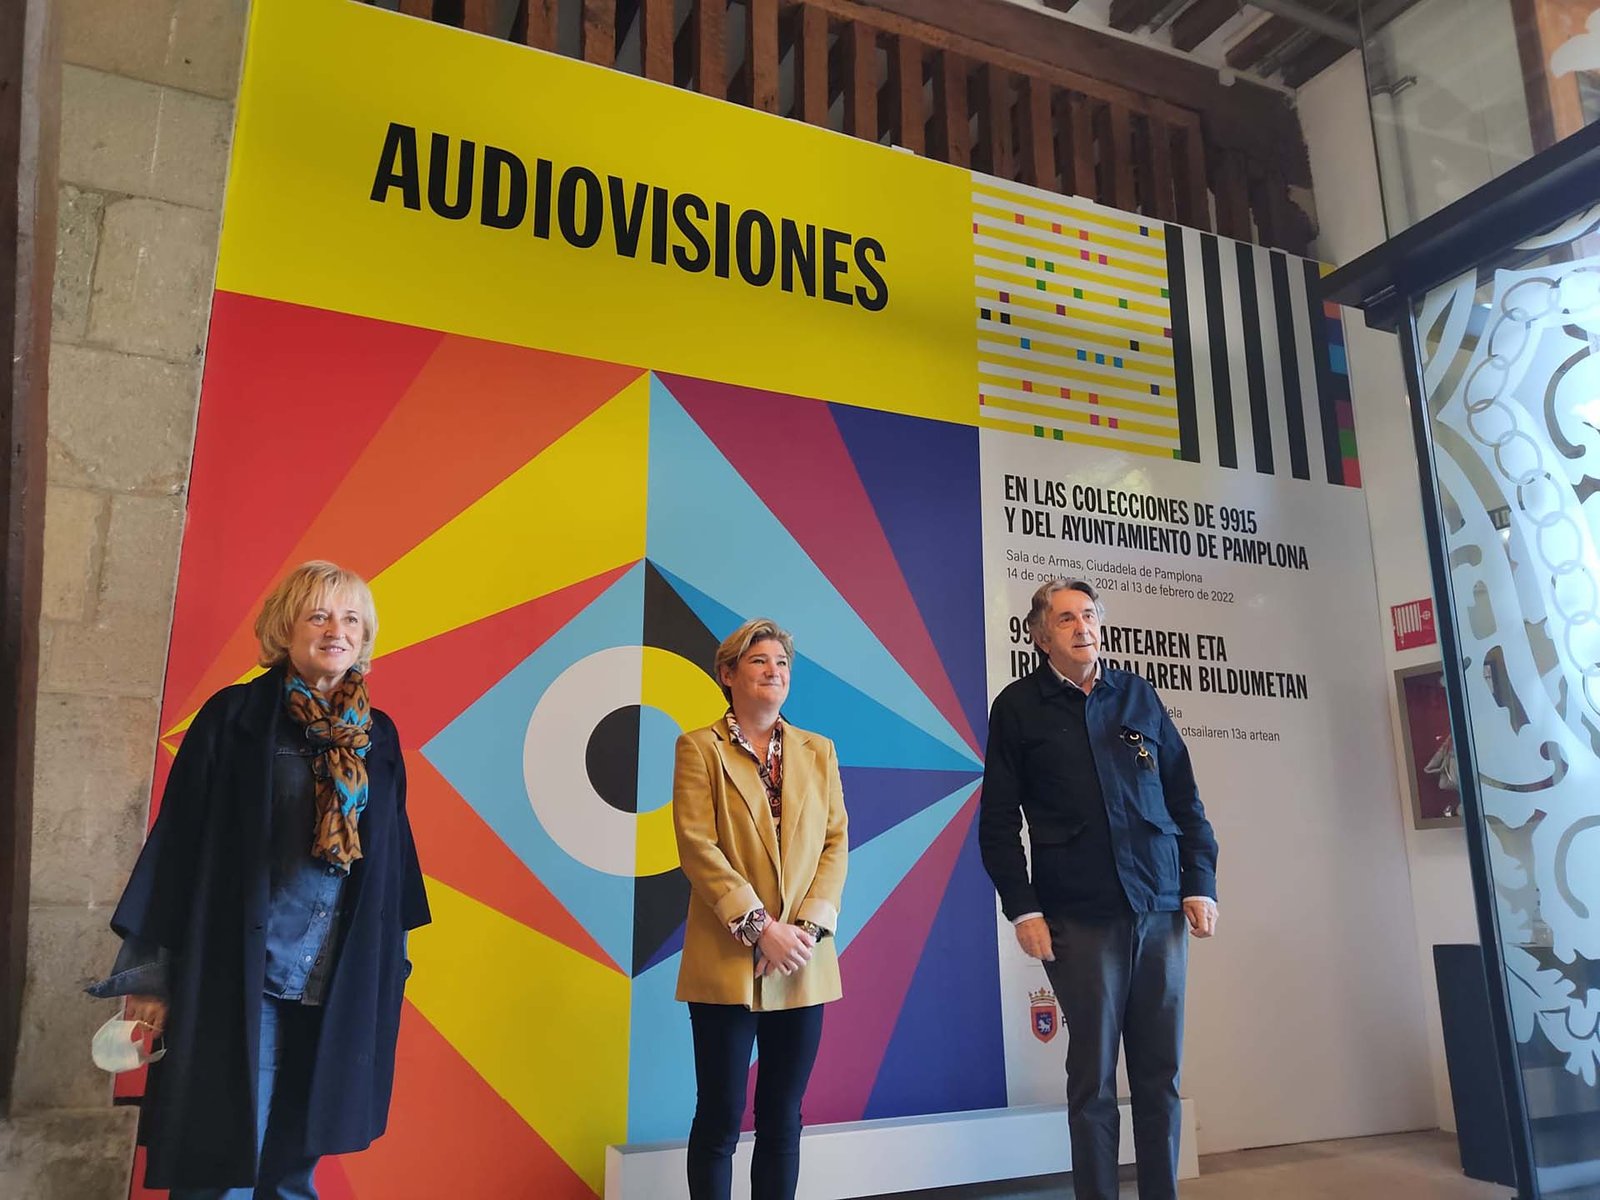 La Sala de Armas de la Ciudadela acoge ‘Audiovisiones’, una mirada al mundo contemporáneo hibridando técnicas, formatos y lenguajes expresivos